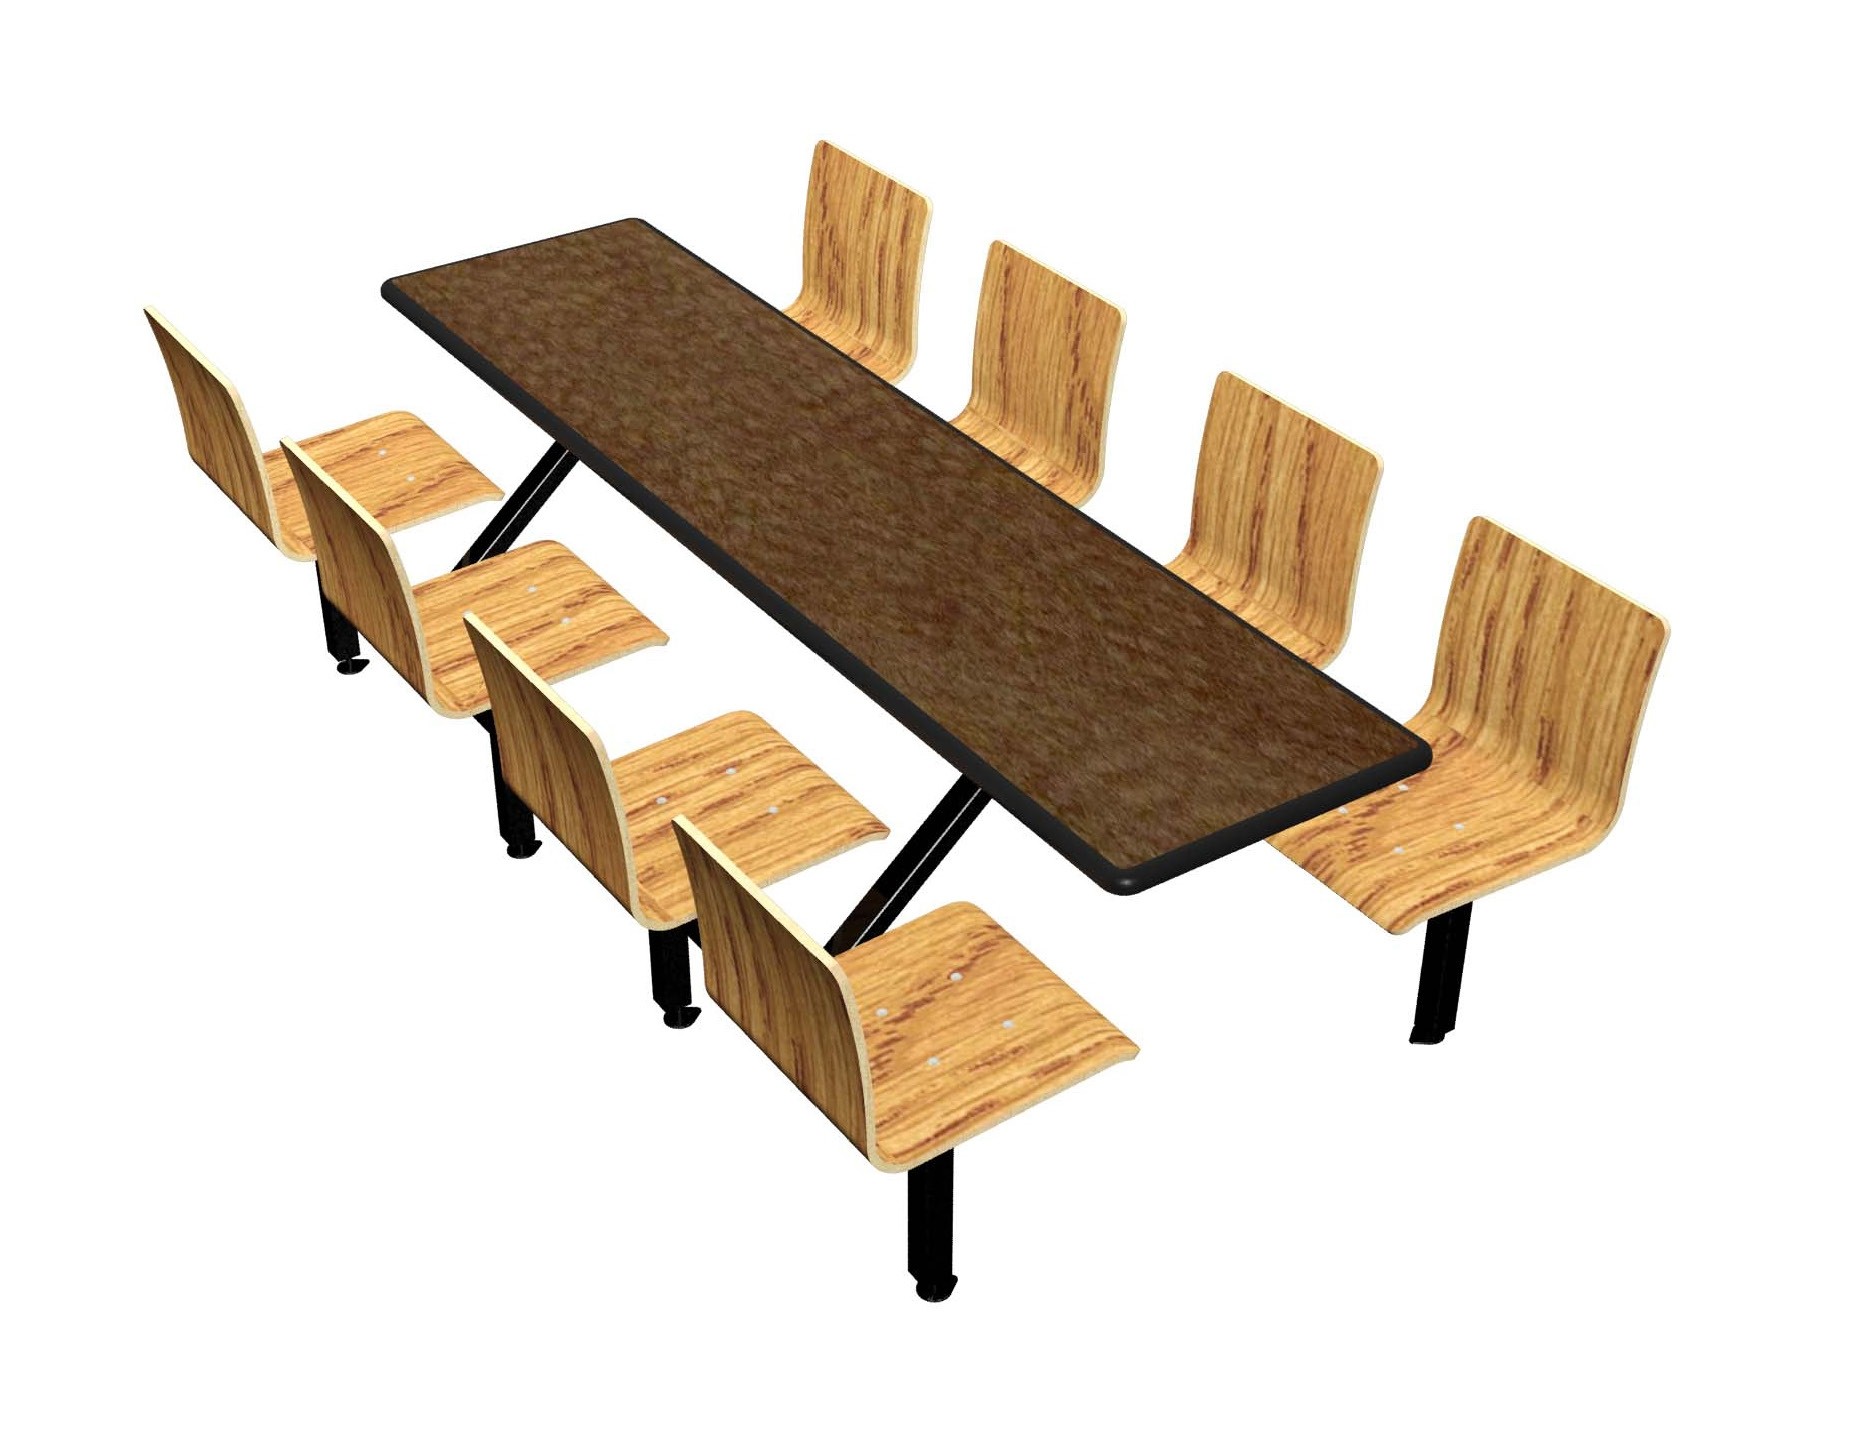 Morro Zephyr laminate table, Black Dur-A-Edge, Natural Oak laminate chairhead